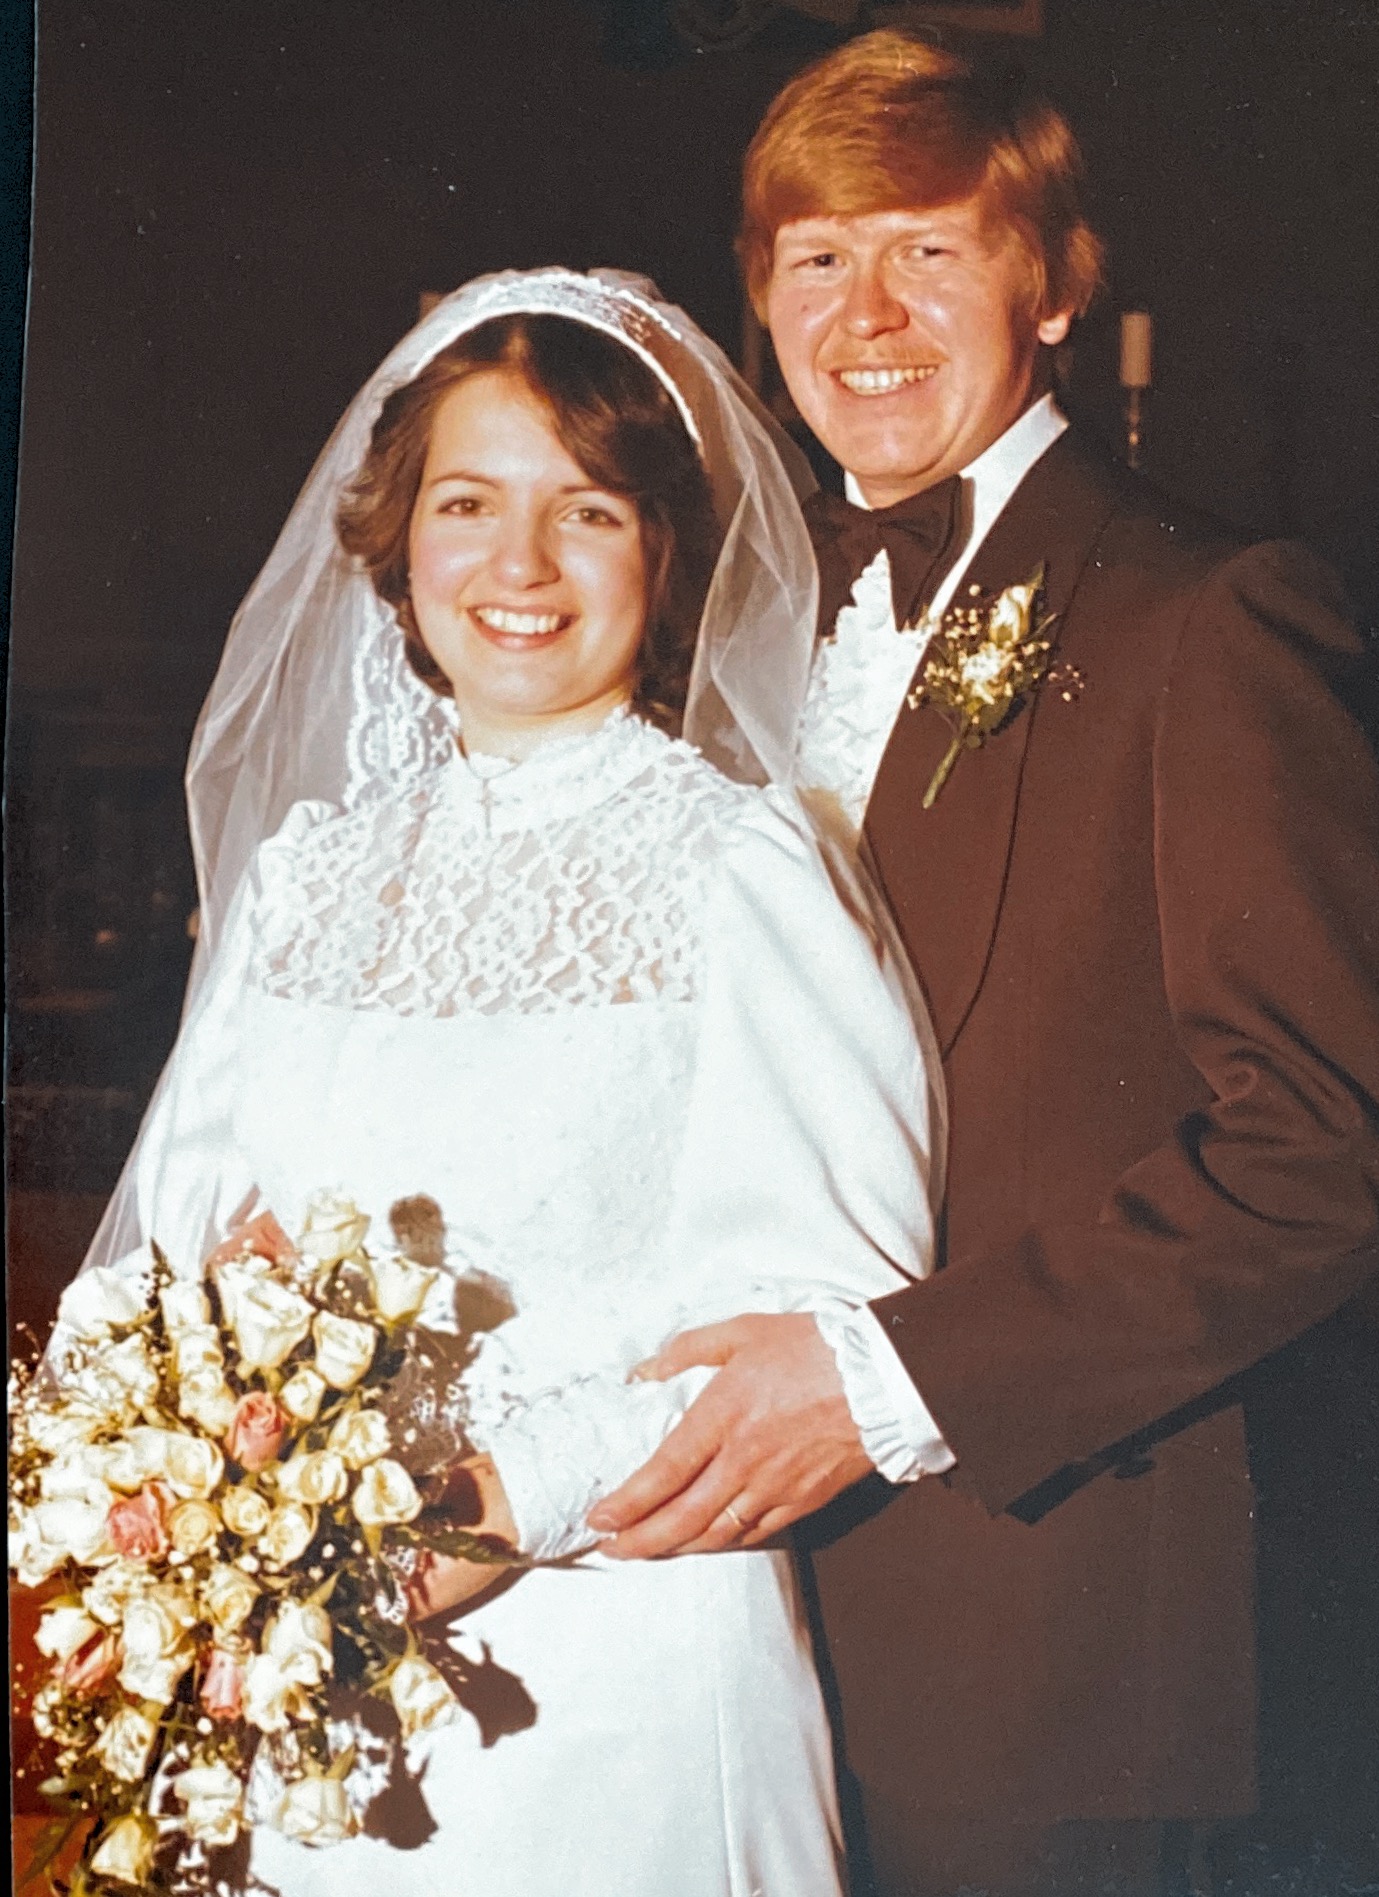 Wedding Day - March 1, 1980